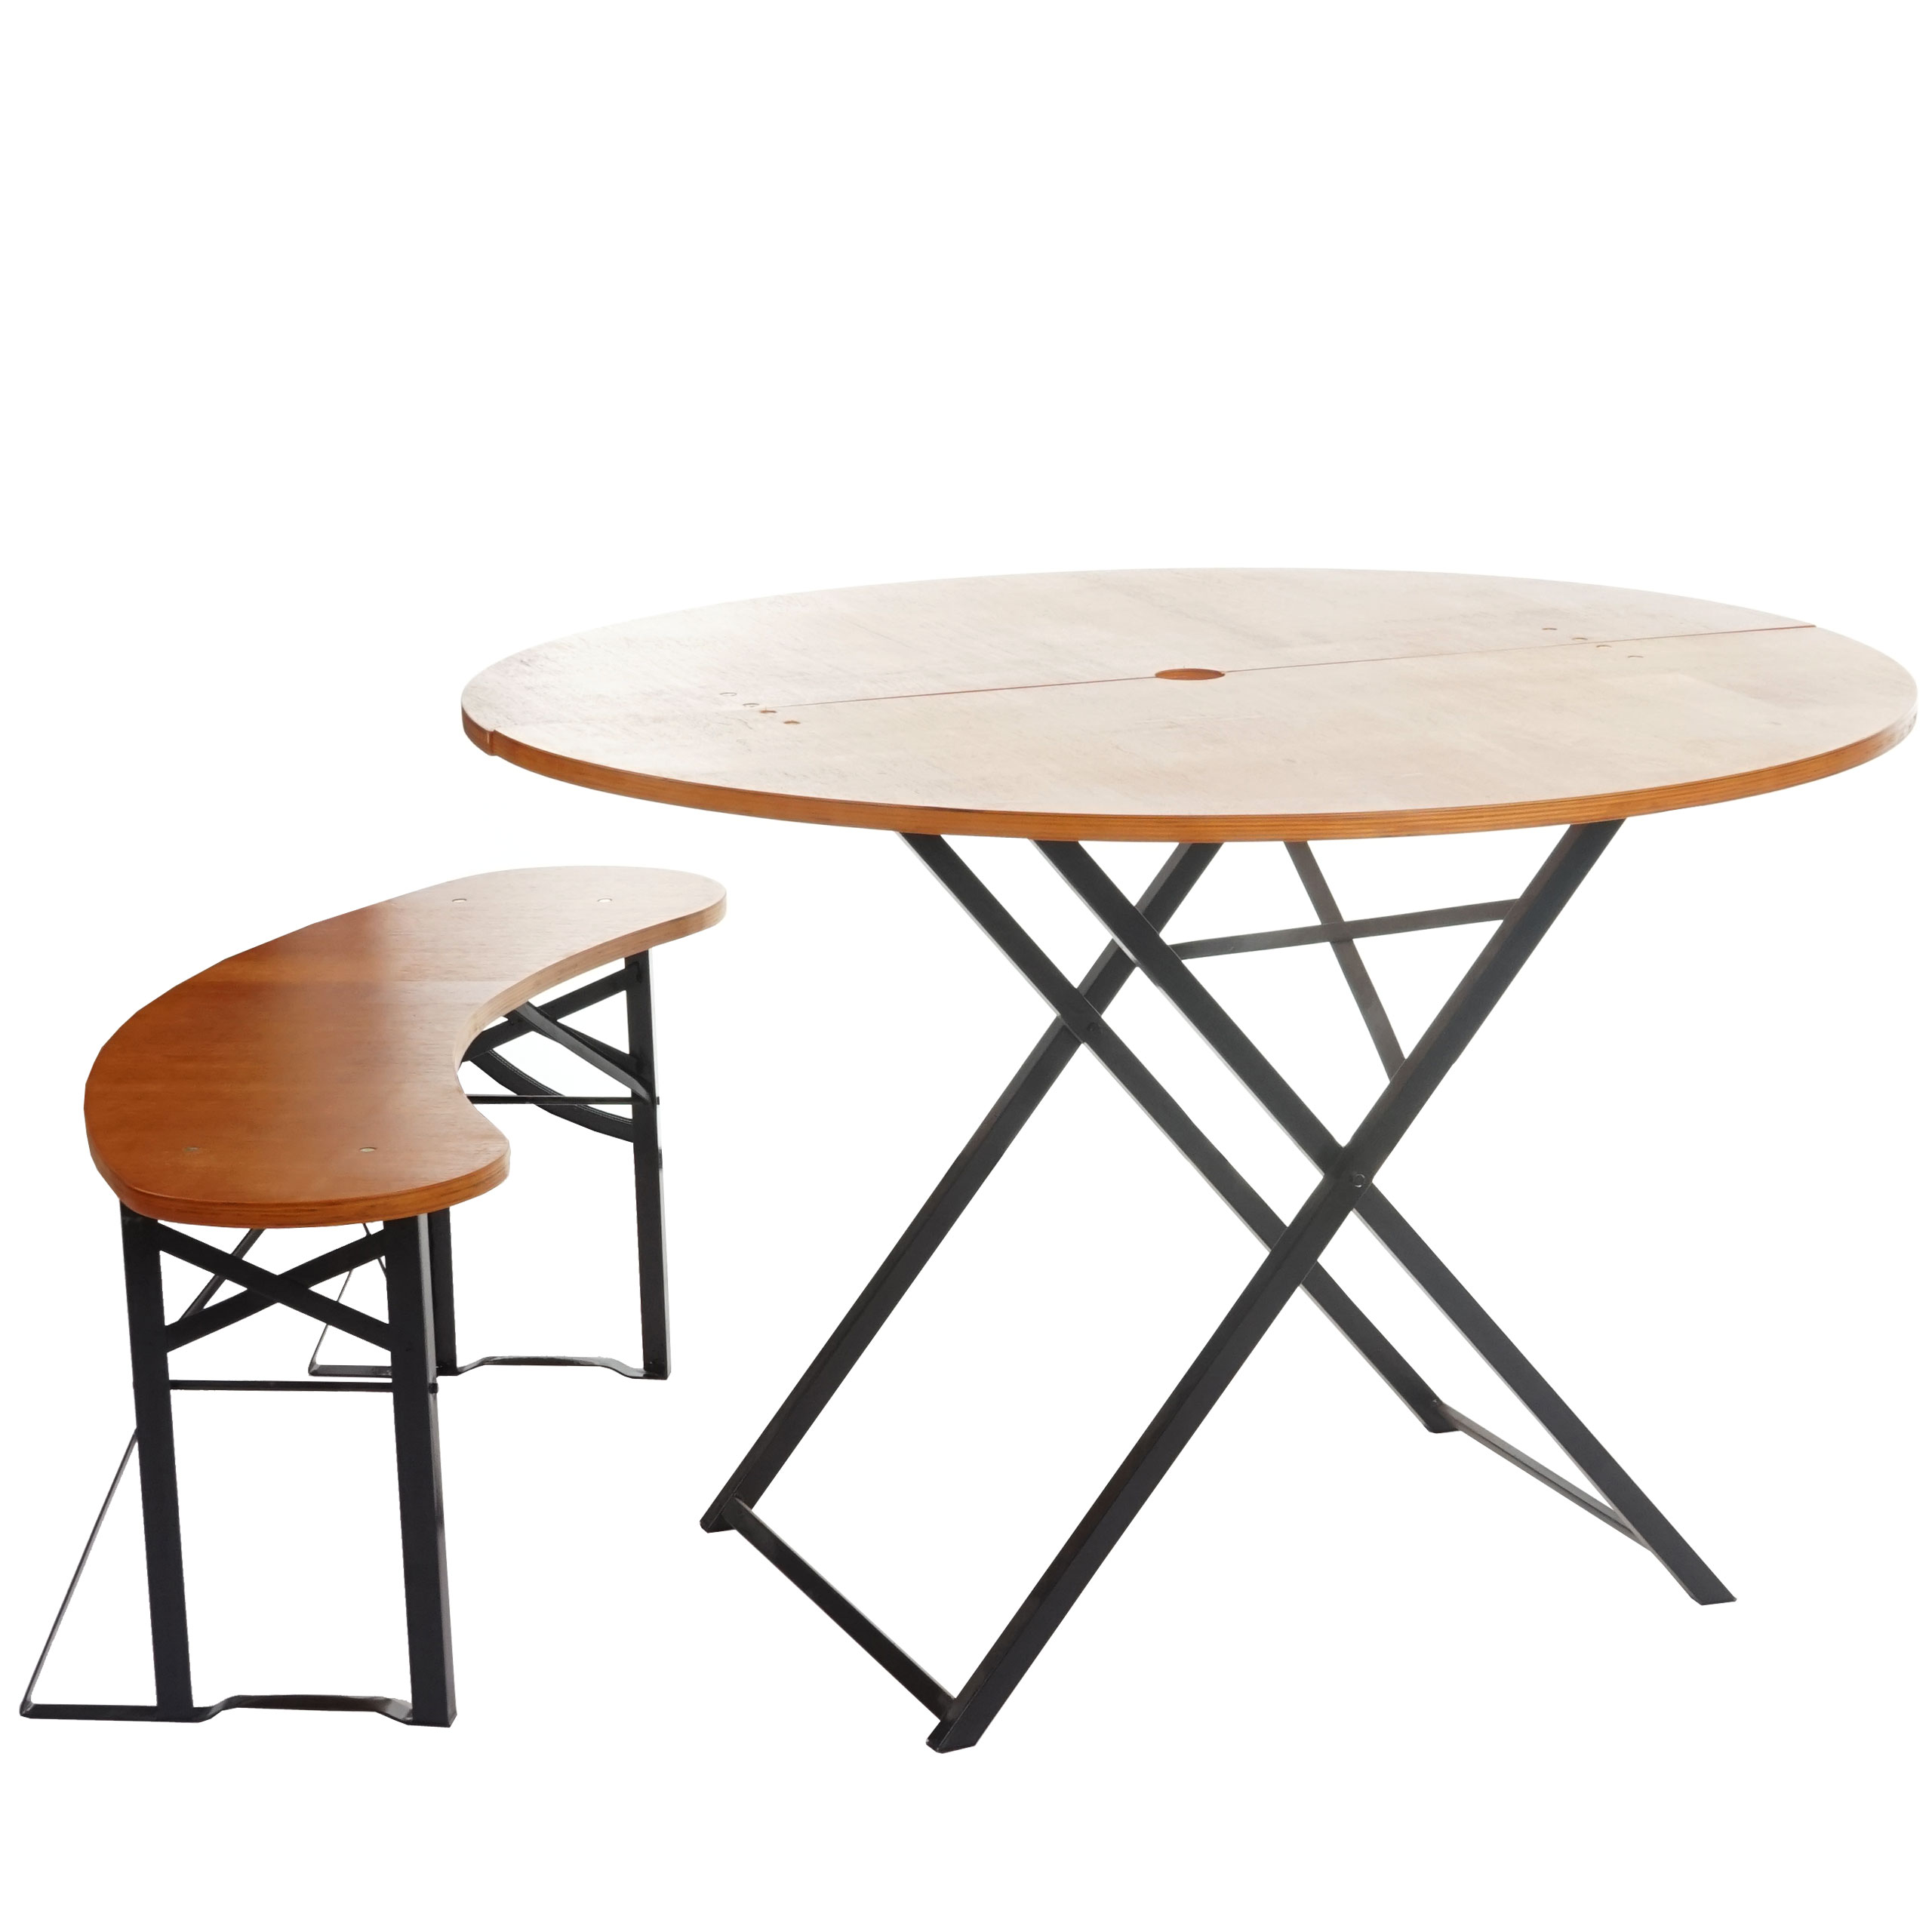 Tisch Melbourne Festzelttisch Biertisch klappbar 115cm